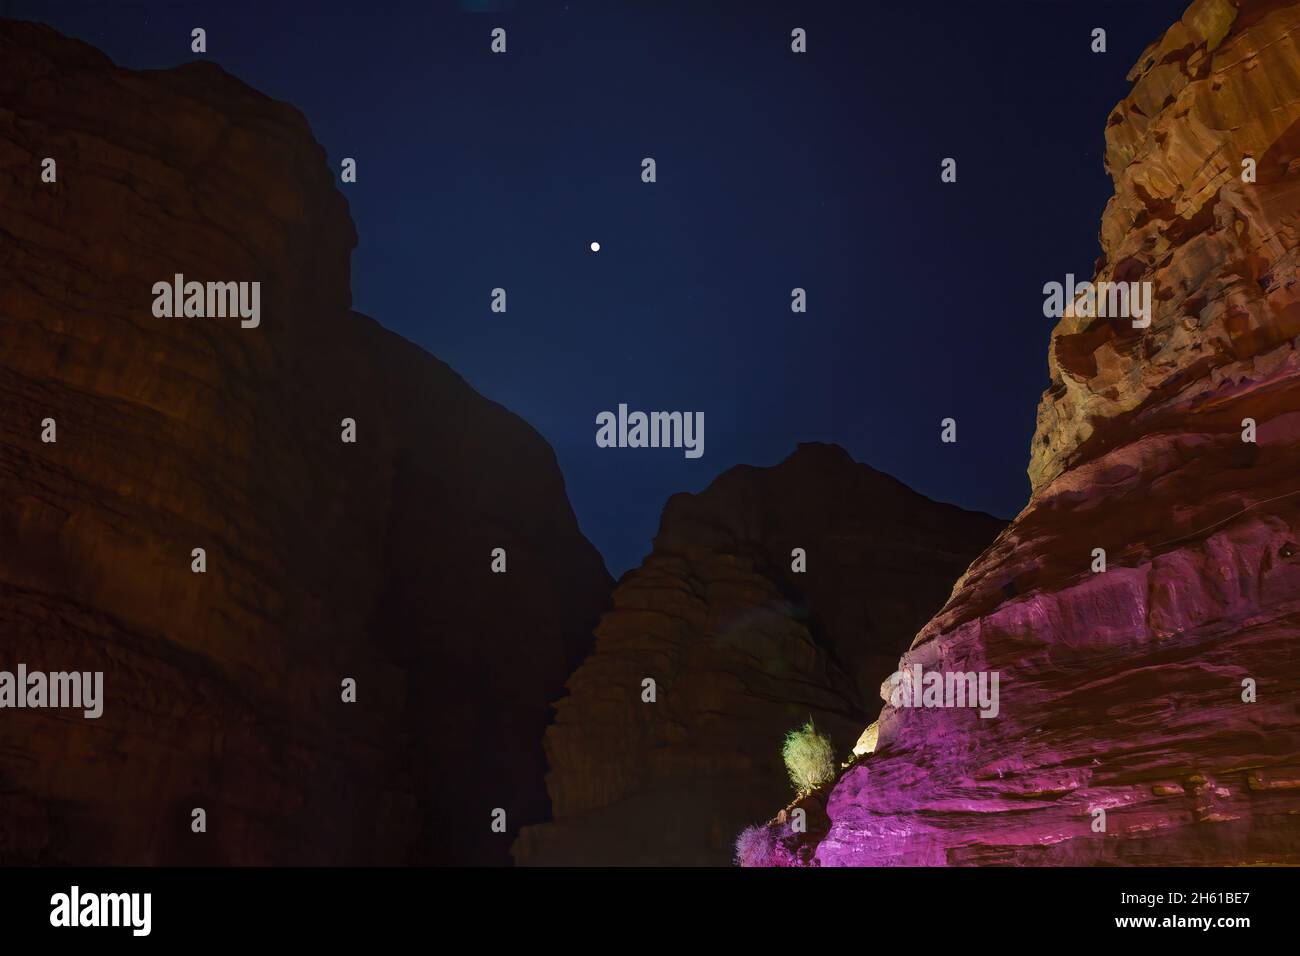 Vista notturna delle scogliere rocciose e della luna, a Wadi Rum, parco del deserto nel sud della Giordania Foto Stock